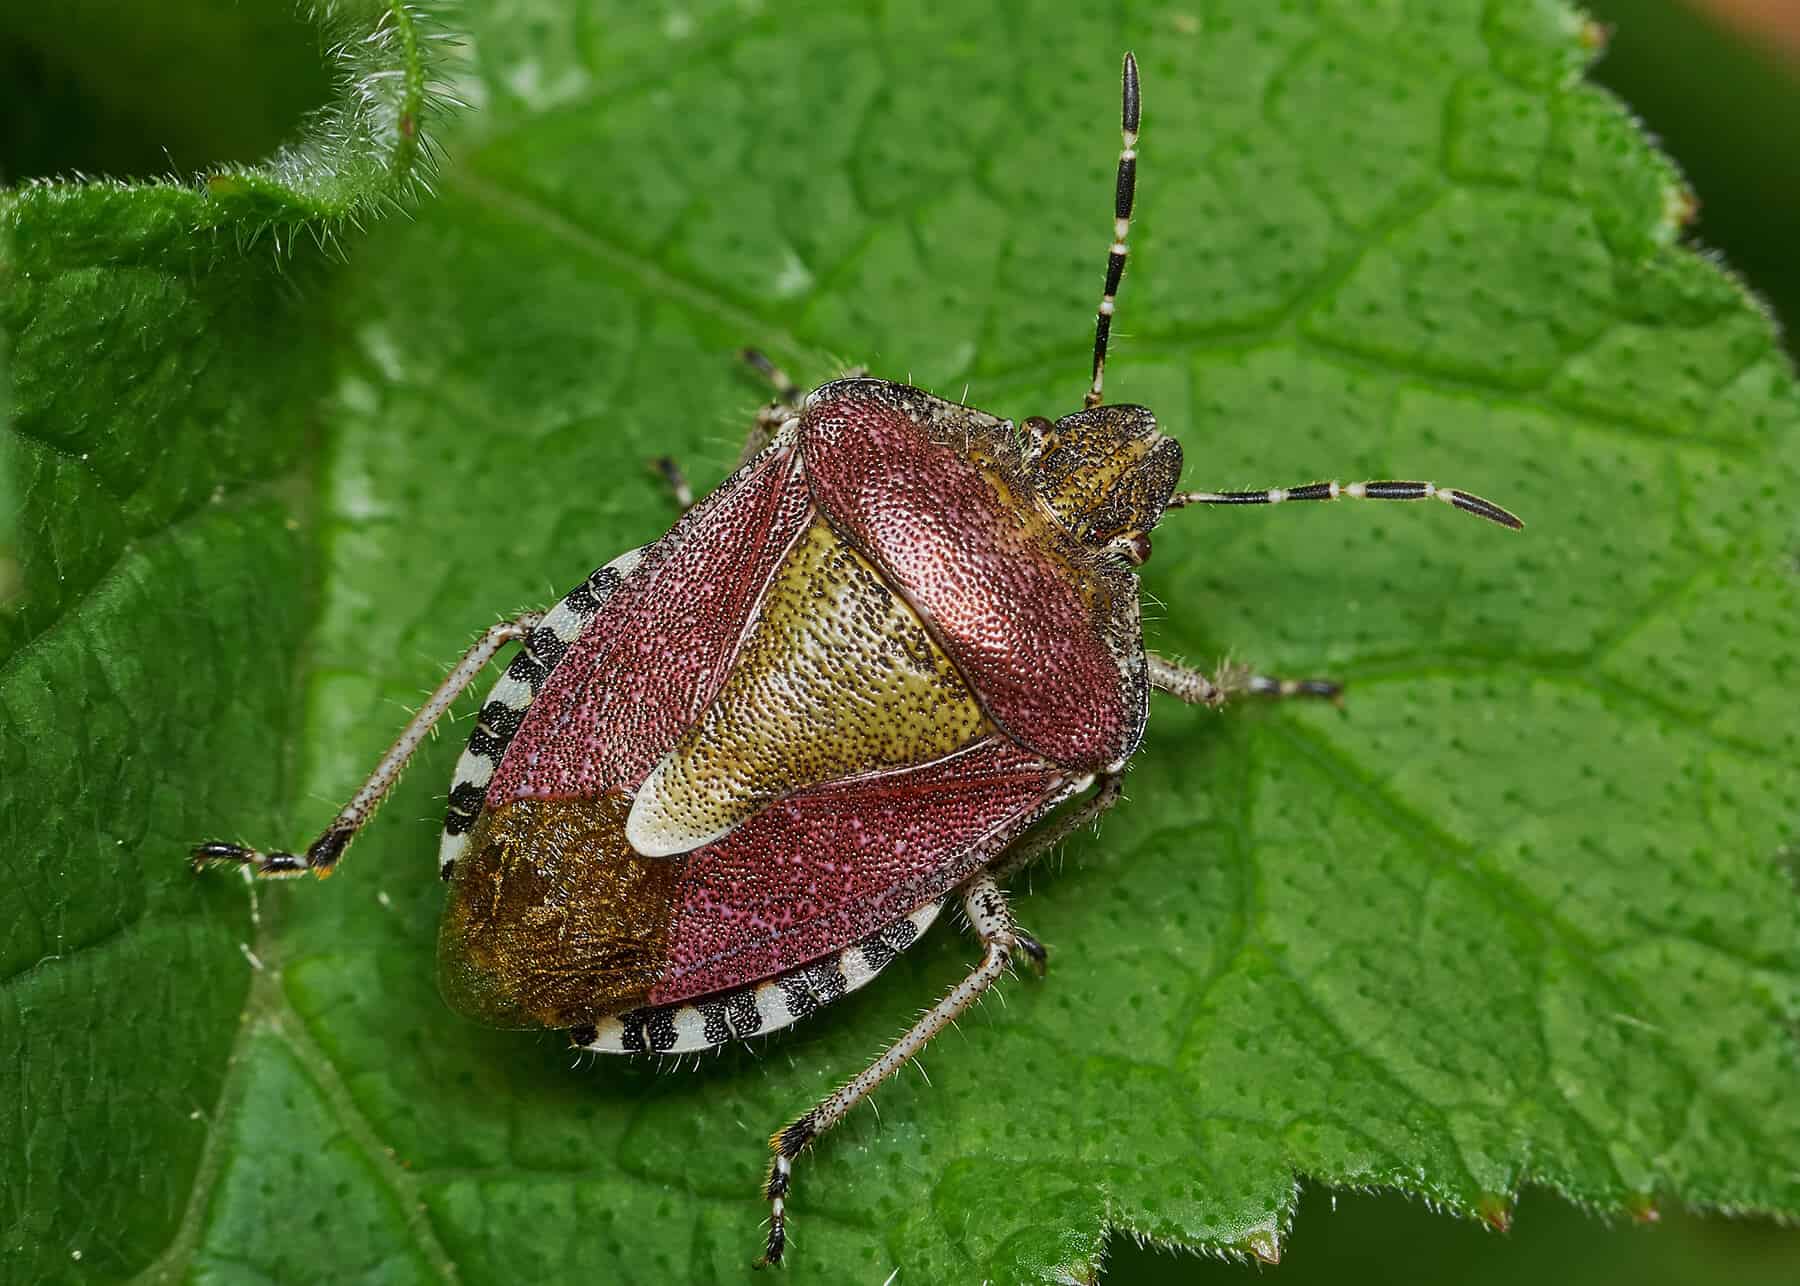 shield bug on a leaf